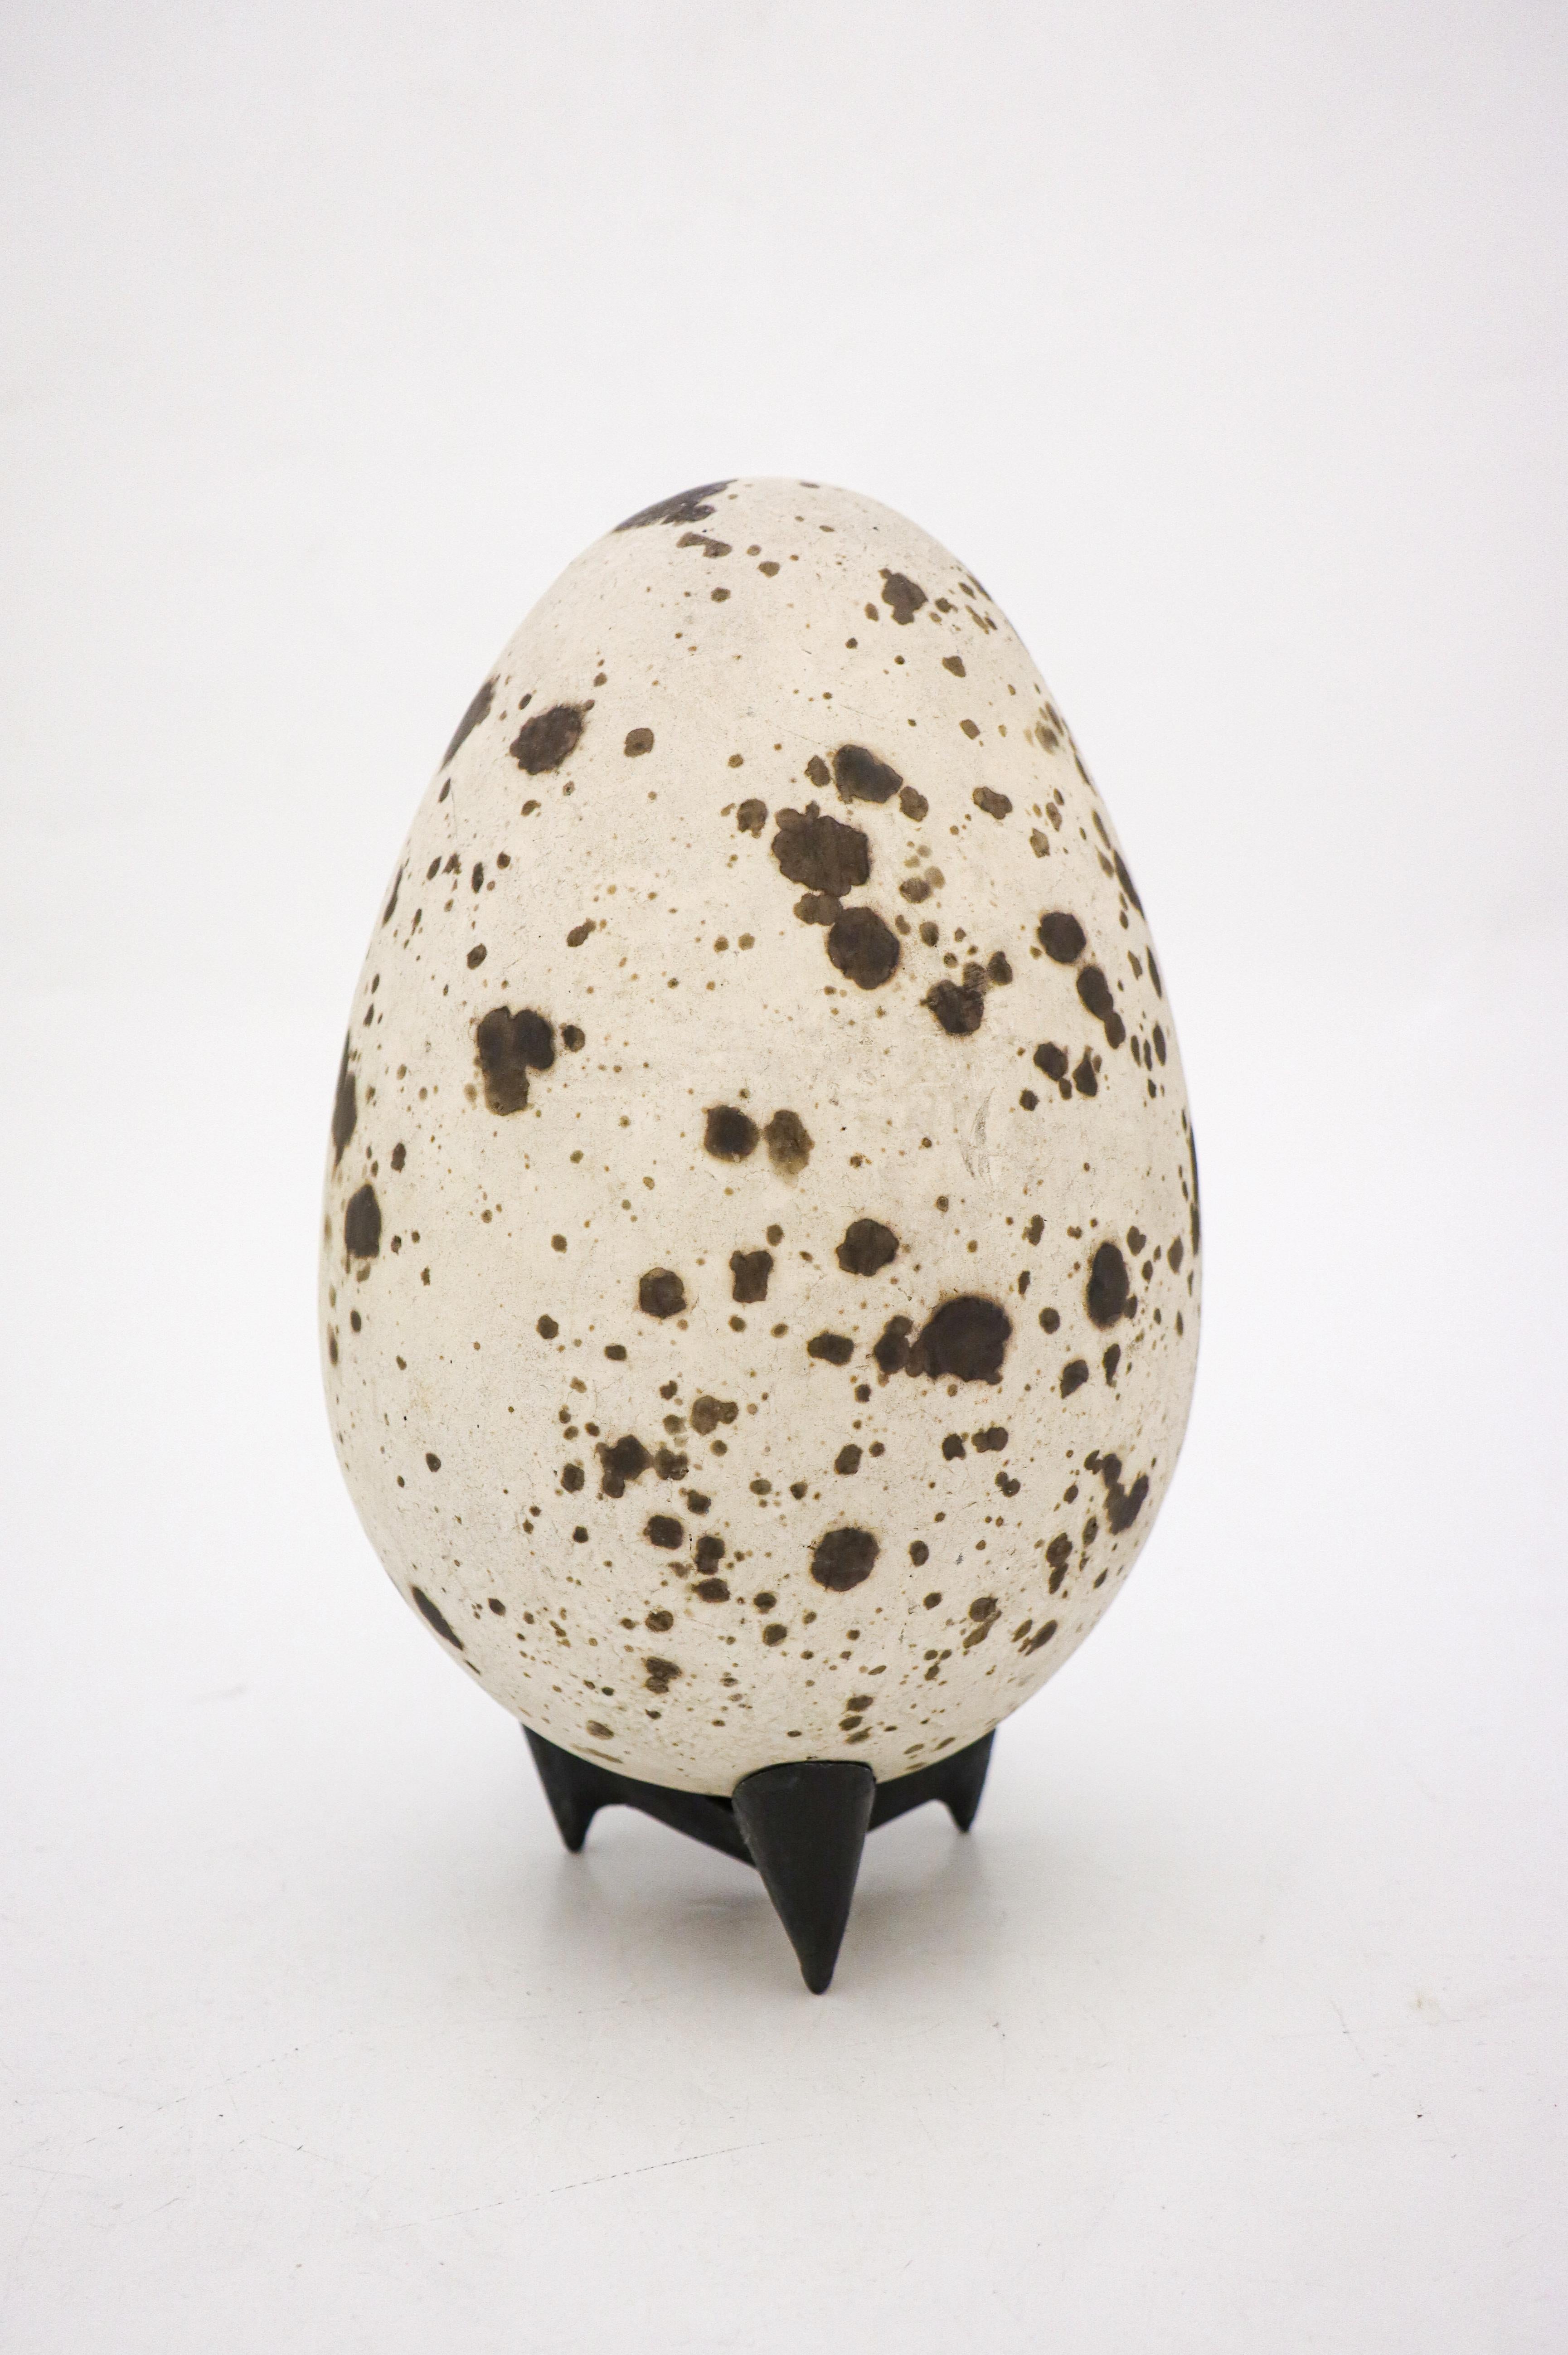 Œuf conçu par le céramiste suédois Hans Hedberg, qui a vécu et travaillé à Biot, en France. Cet œuf mesure 25 cm de haut, y compris le support. Il est en excellent état et possède une belle glaçure qui ressemble à du béton avec des taches brunes.